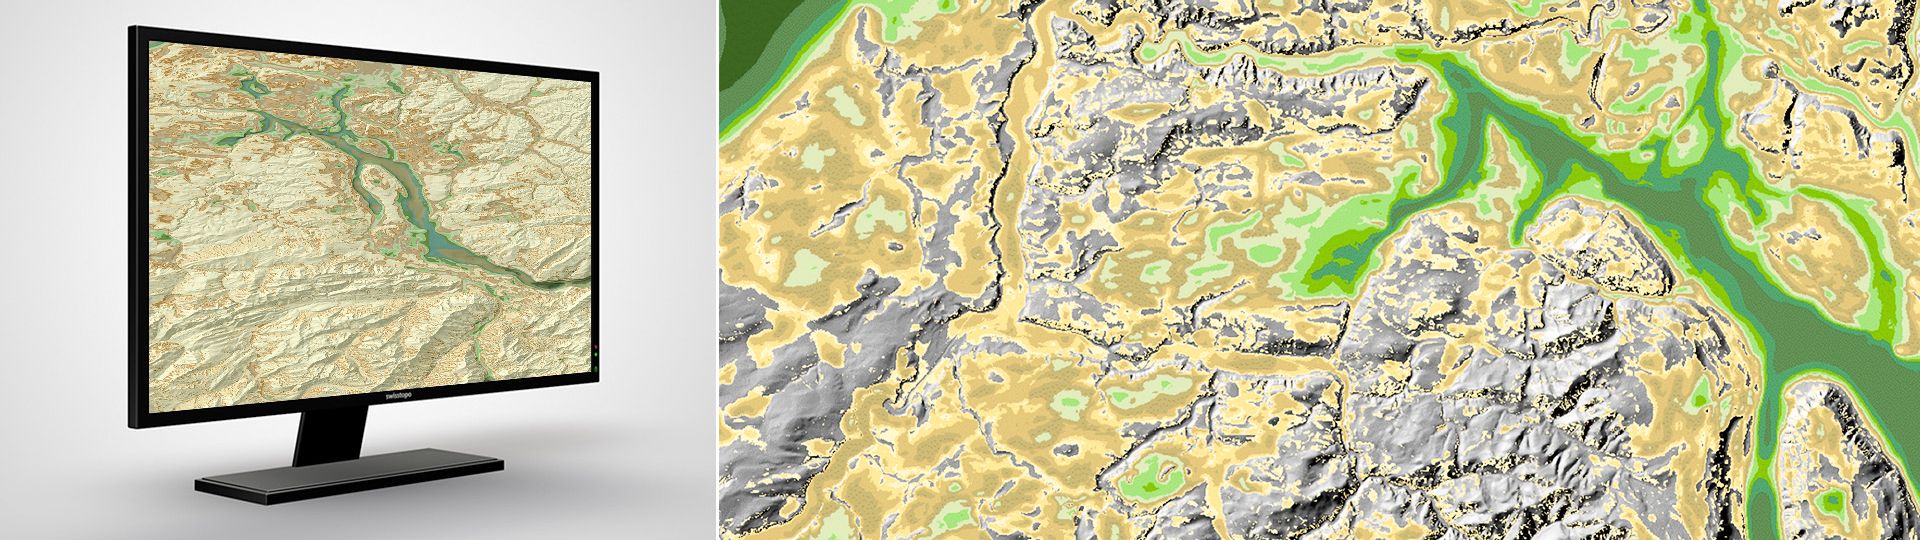 Mächtigkeitsmodell des Lockergesteins: Das digitale Mächtigkeitsmodell des Lockergesteins im Molassebecken und in den grossen Alpentälern